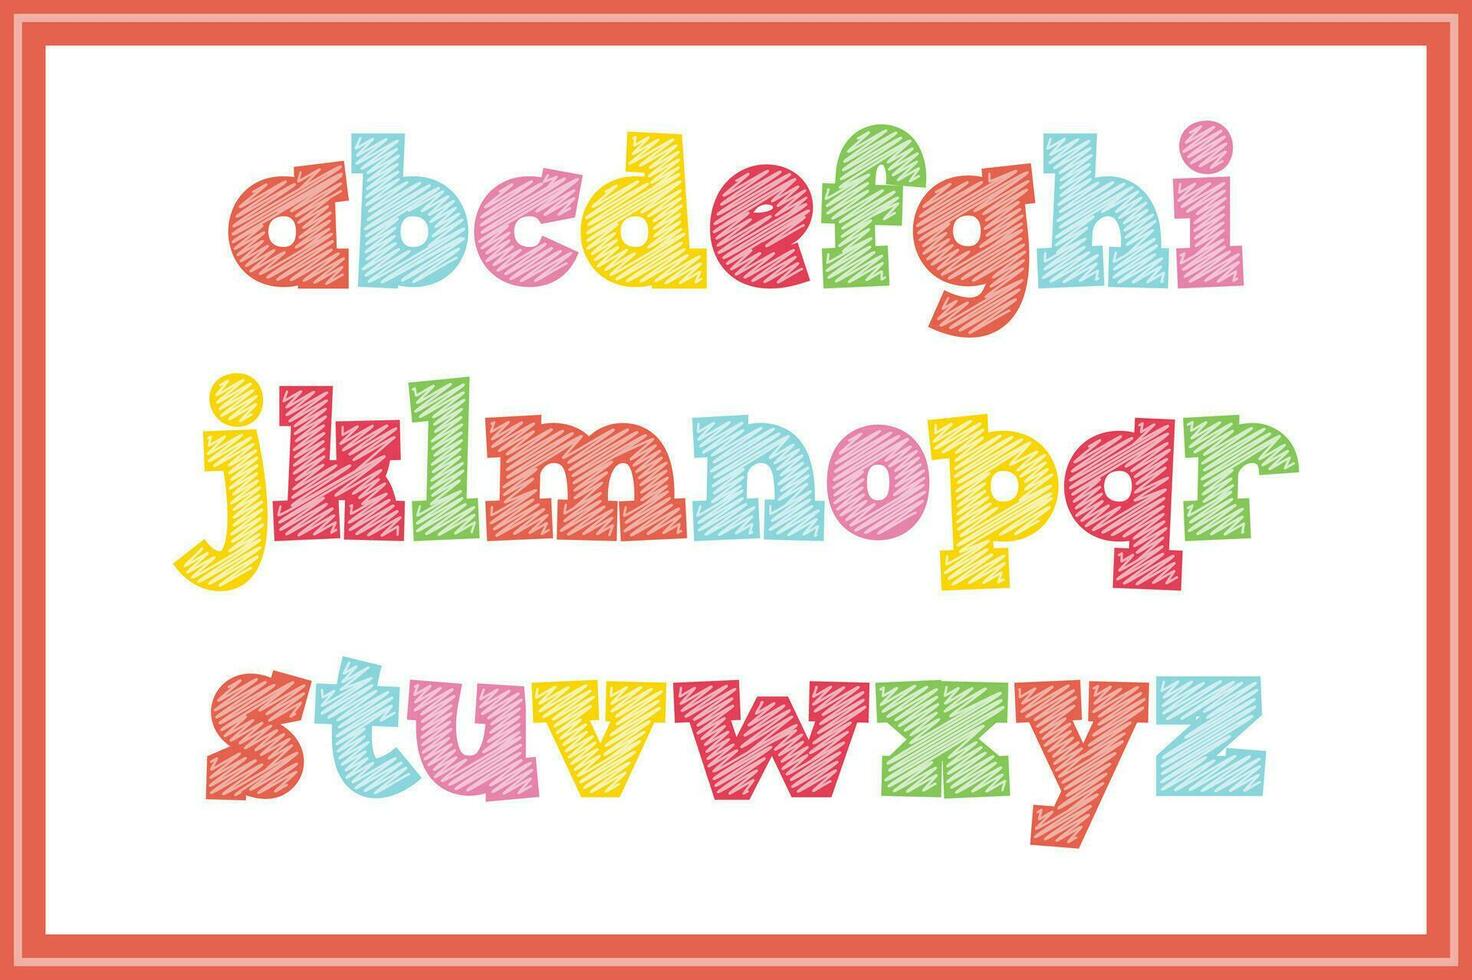 versatile collezione di scarabocchiare creazioni alfabeto lettere per vario usi vettore